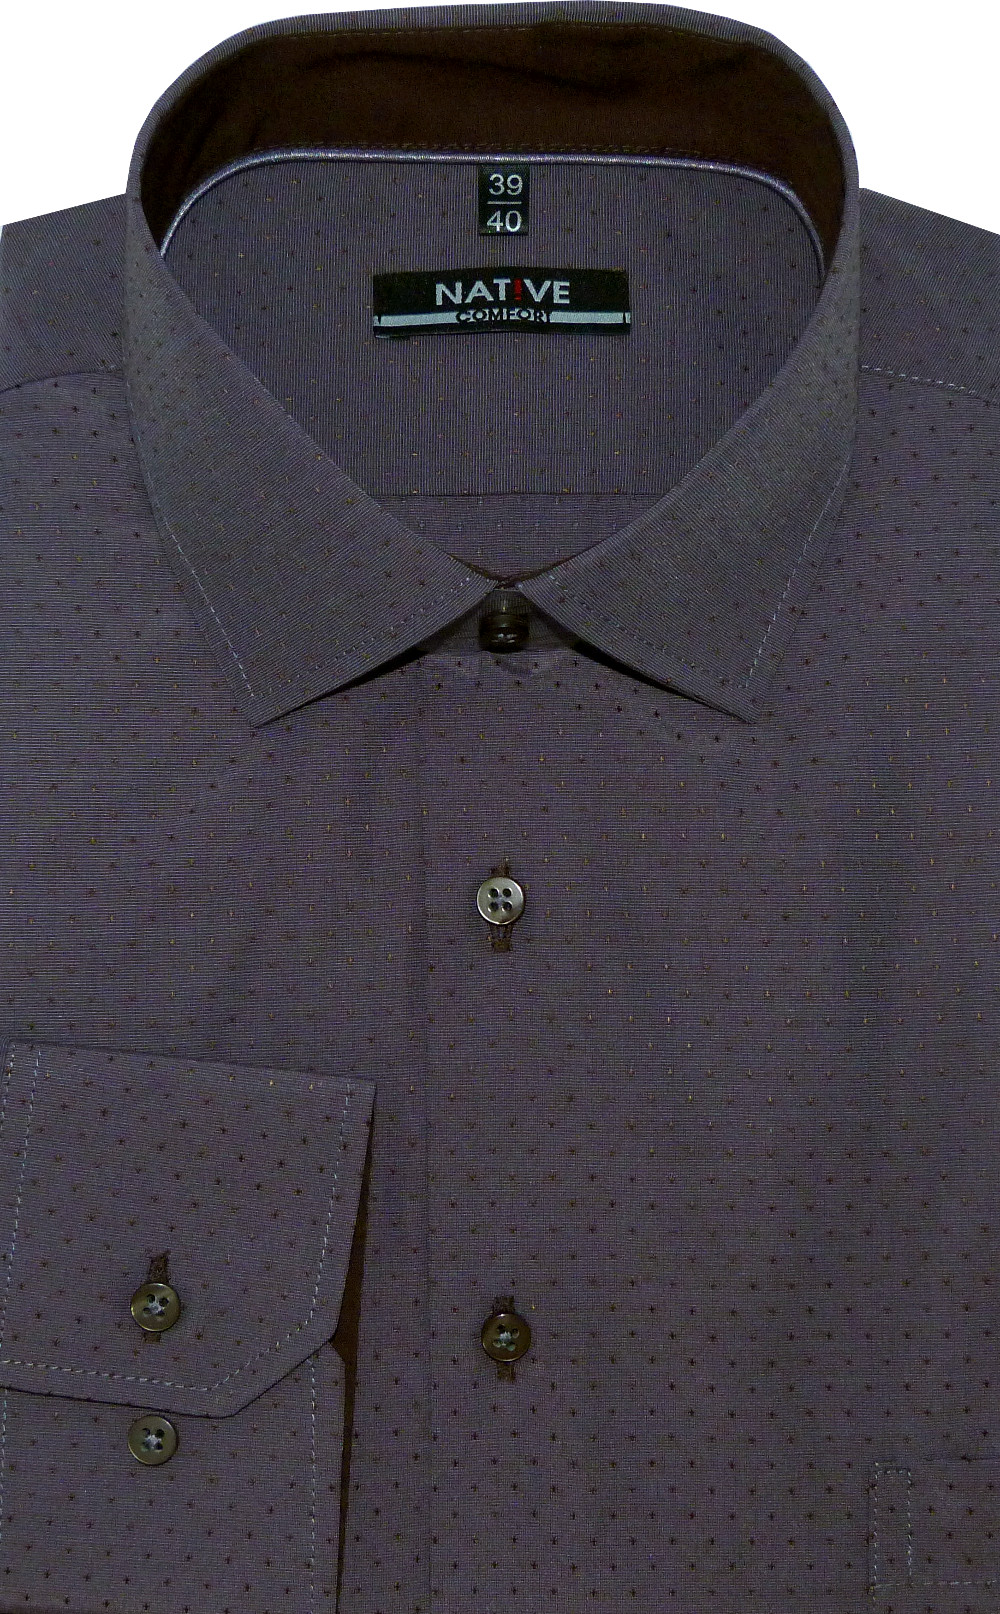 Pánská košile (šedá) s dlouhým rukávem, vel. 39/40 - N205/321